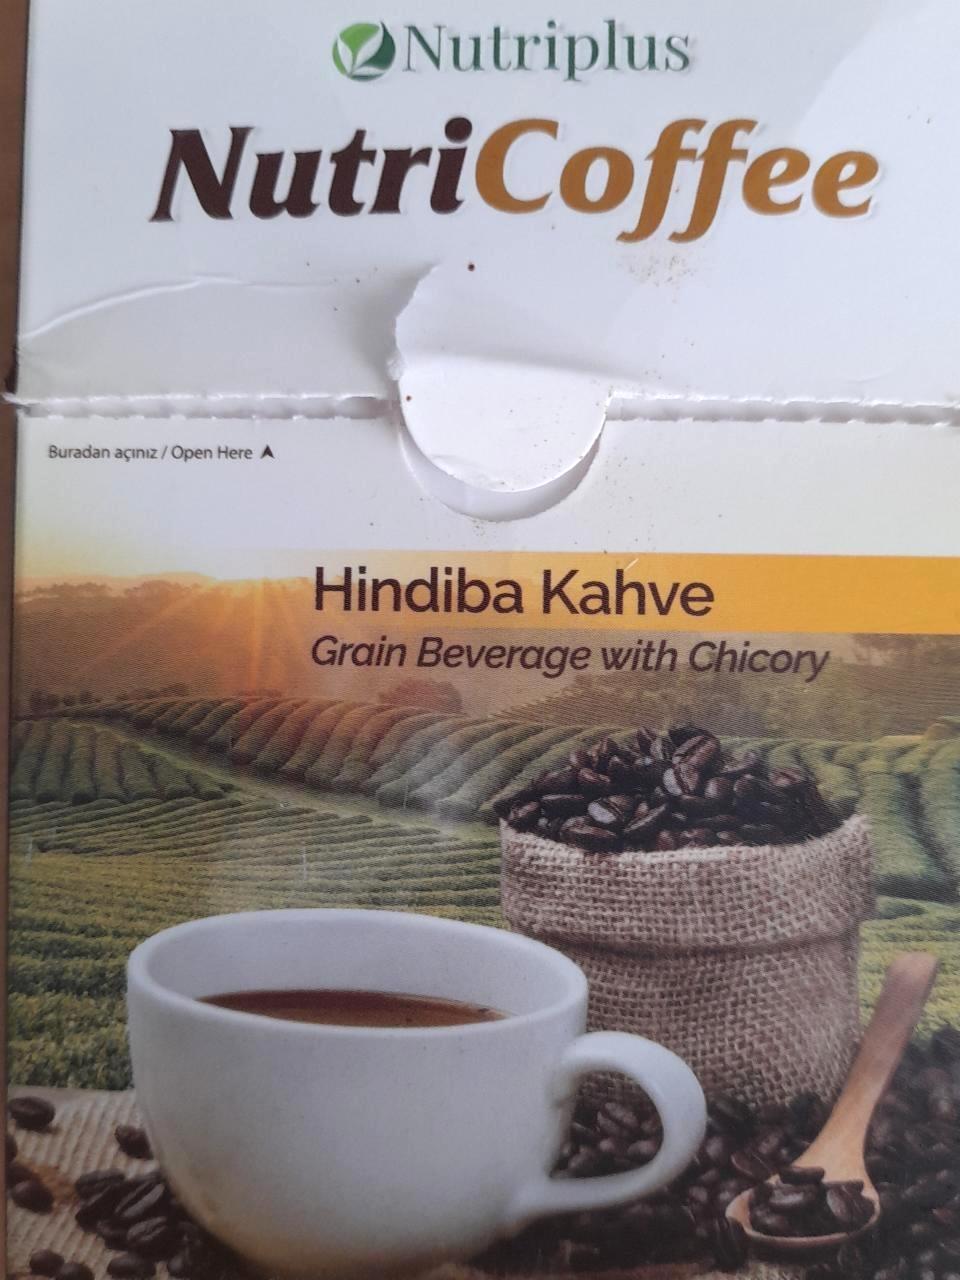 Képek - NutriCoffee cikória kávé Nutriplus